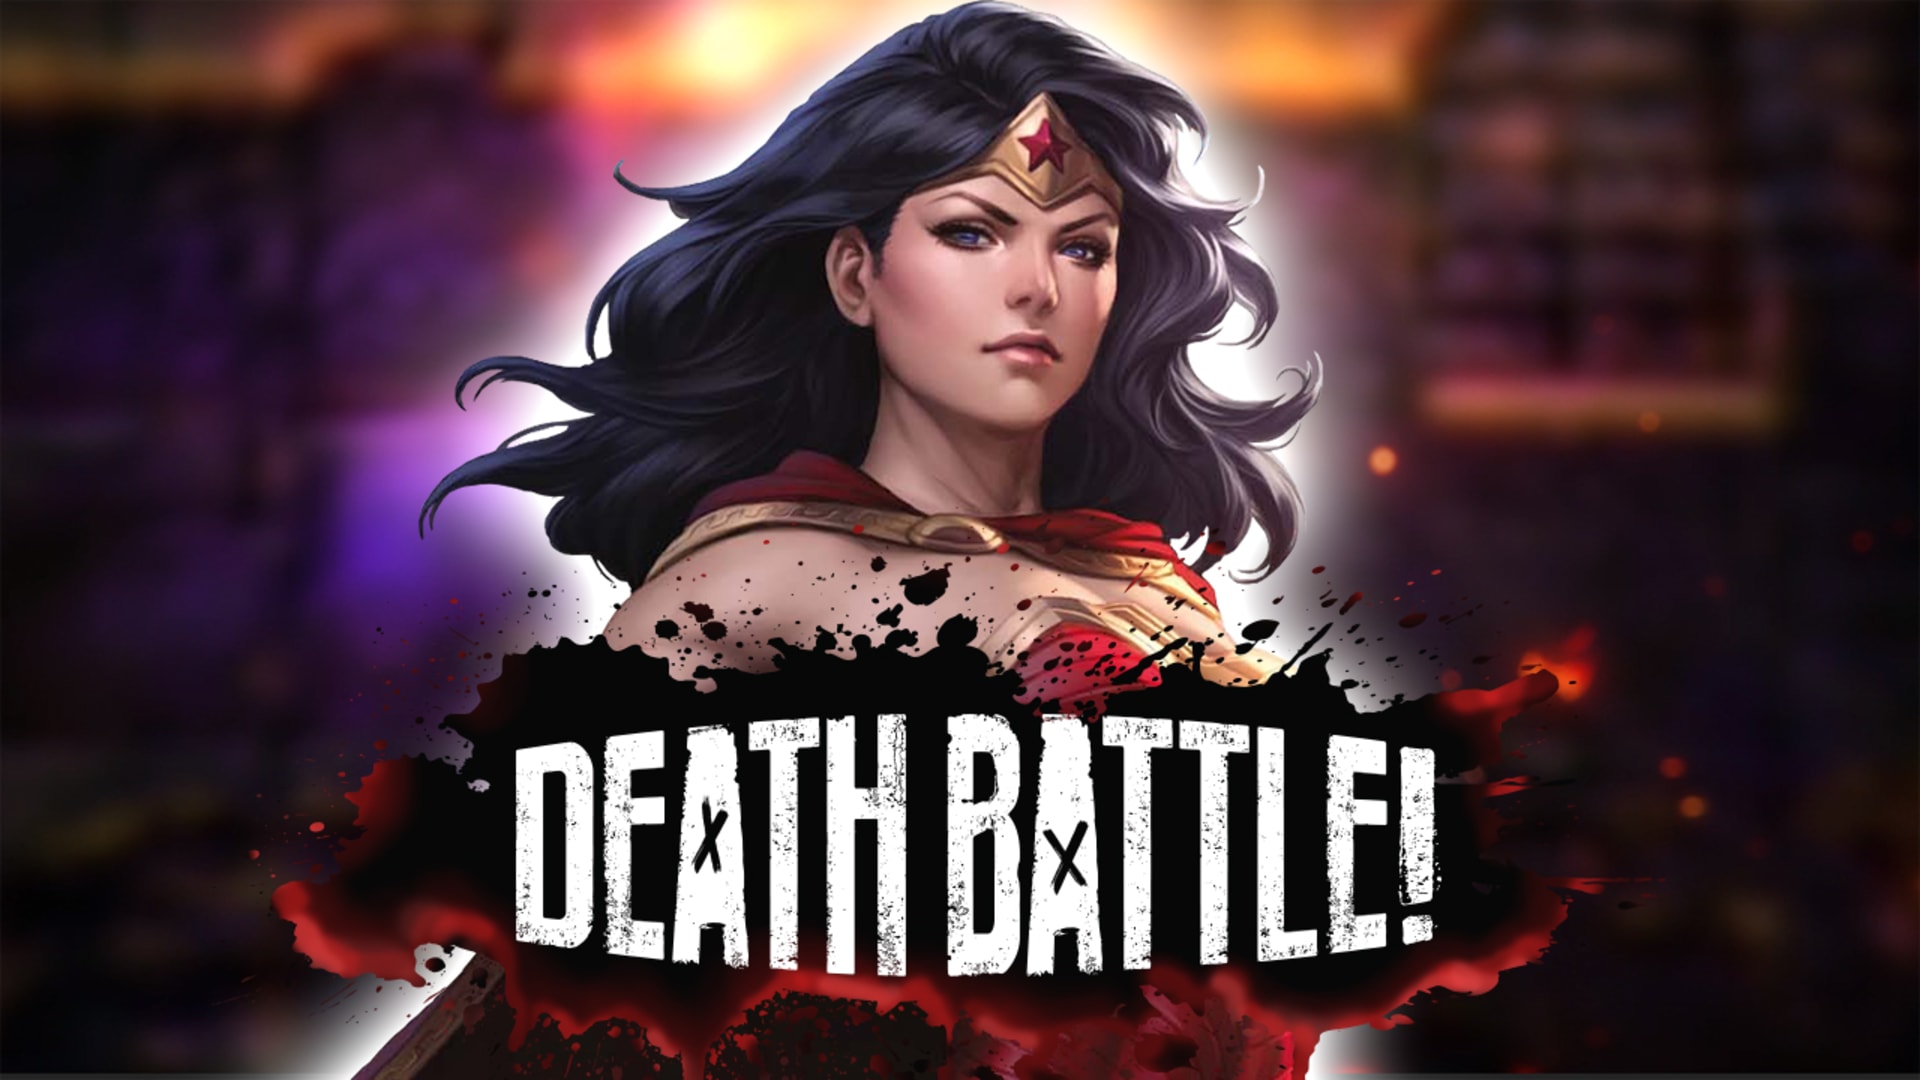 HEROINE CHIC - Wonder Woman Flash Games Gameplay - Rooster Teeth